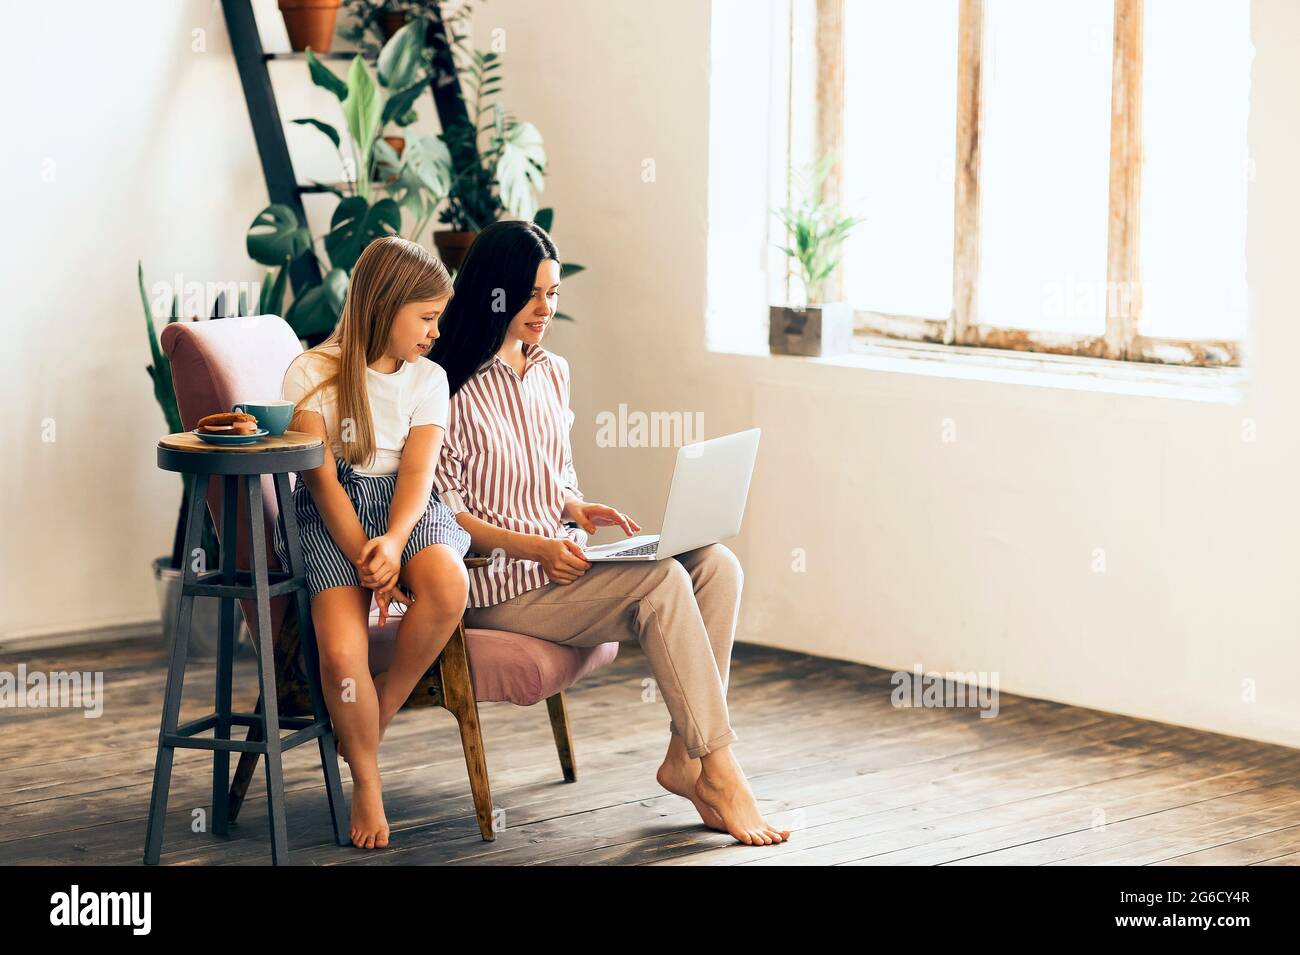 Adorable fille embrassant une jeune femme travaillant sur un ordinateur portable dans un salon confortable Banque D'Images